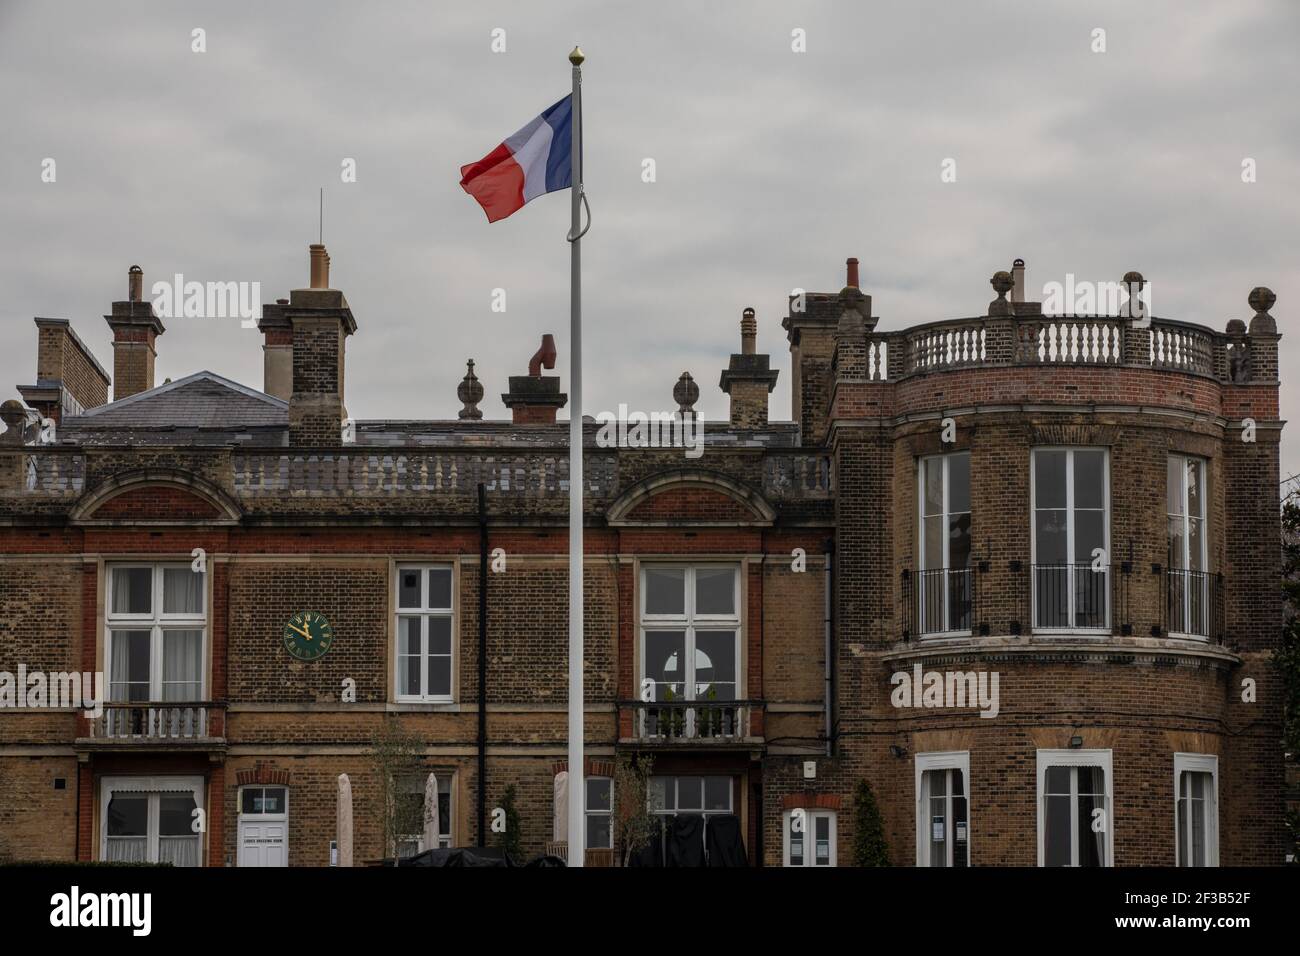 Bandera Nacional Francesa en el mástil celebrando el the150 aniversario desde Napoleón III, la familia imperial francesa en el exilio llegó a Camden Place, Kent Foto de stock